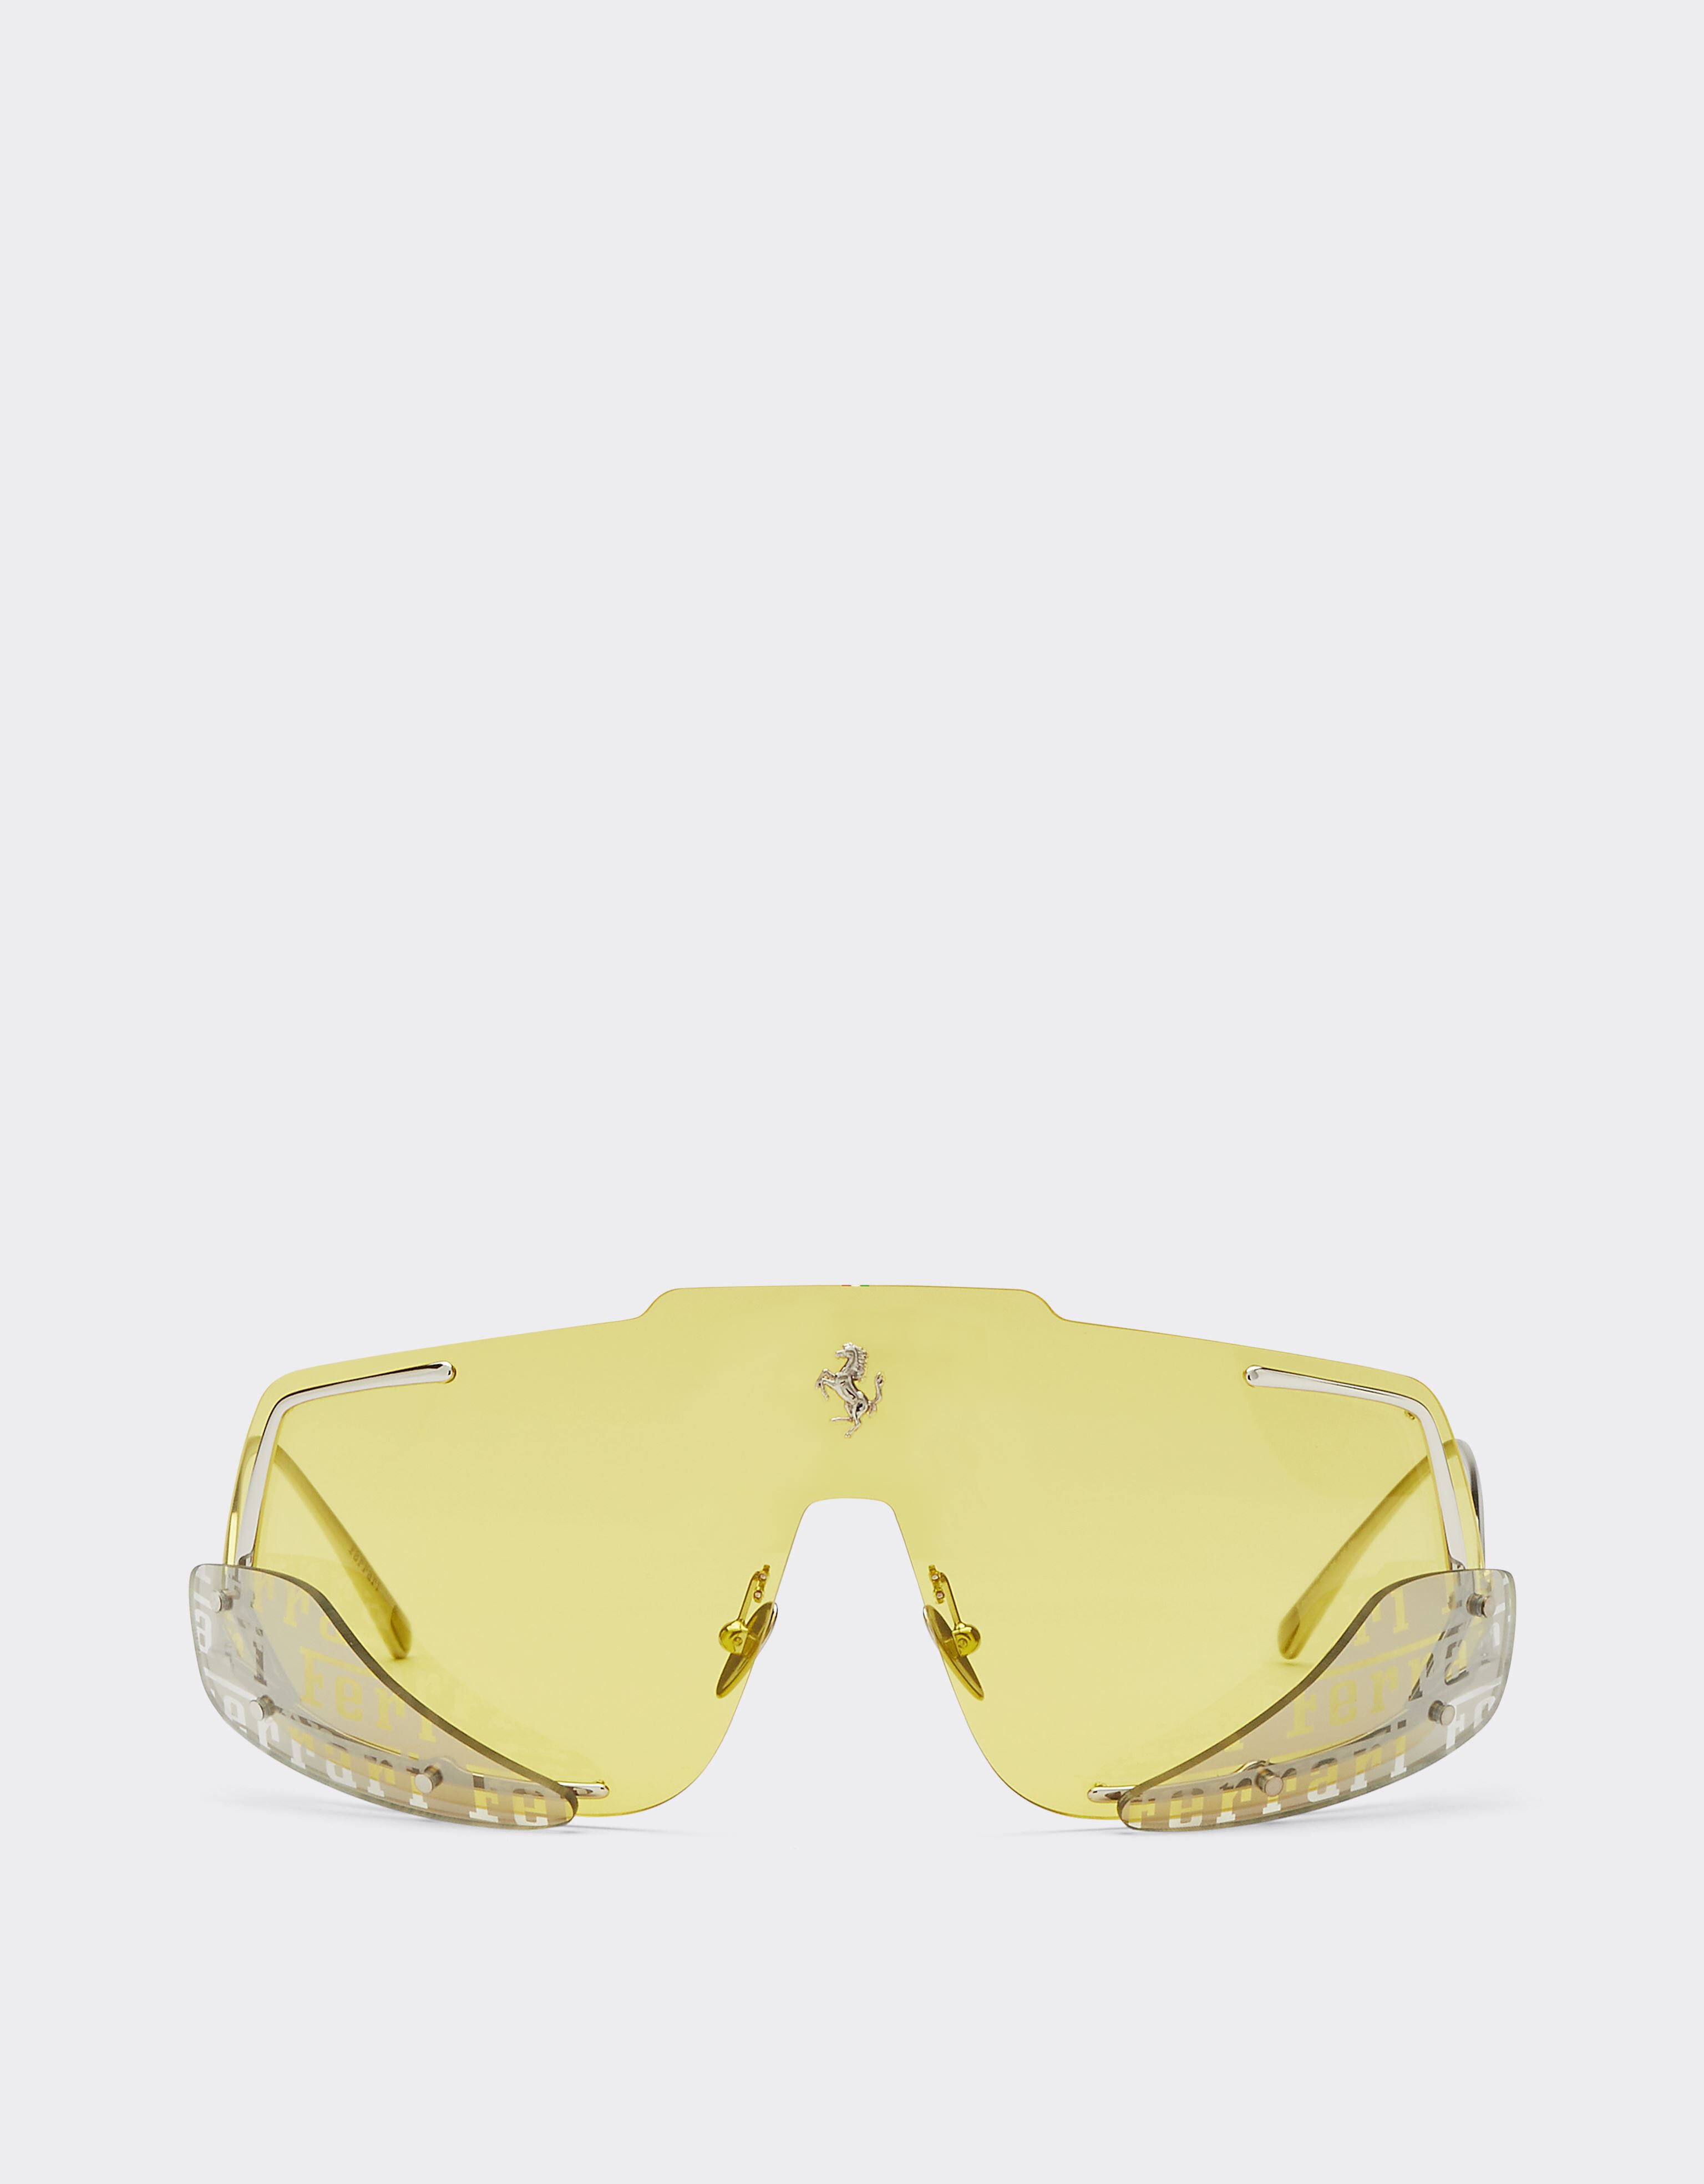 Ferrari Ferrari-Sonnenbrille mit gelben Gläsern Silber F0406f